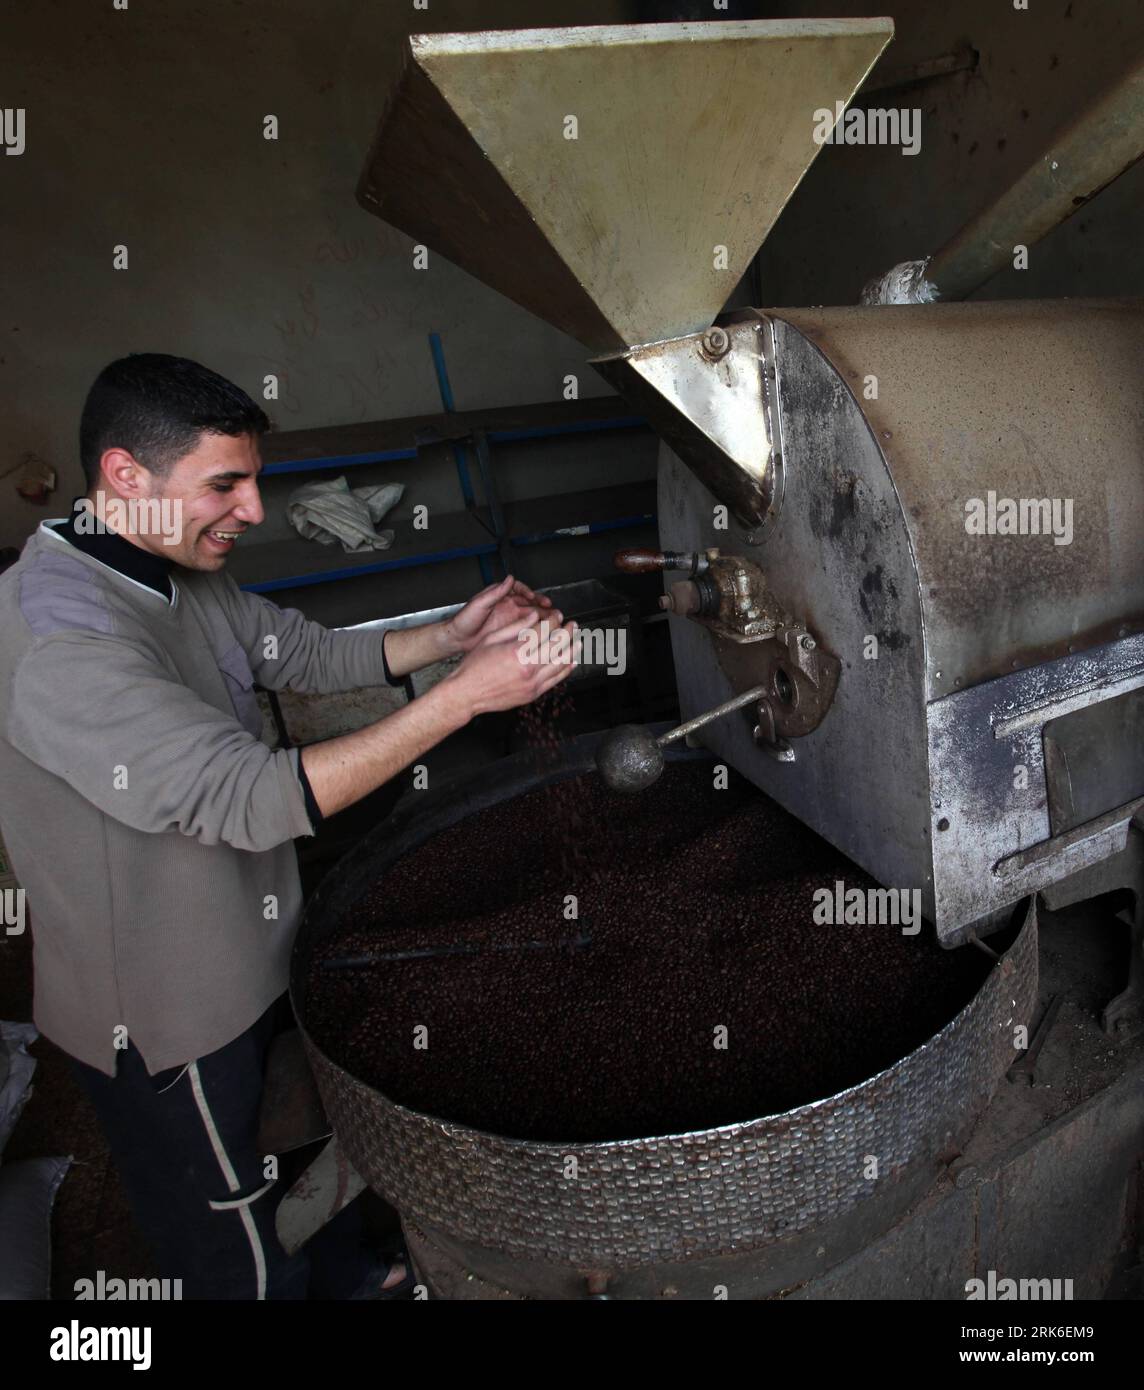 Bildnummer: 53834098 Datum: 04.03.2010 Copyright: Imago/Xinhua (100304)-- GAZA, 4 de marzo de 2010 (Xinhua) -- Un palestino tuesta granos de café en su tienda en la ciudad de Gaza el 4 de marzo de 2010. Israel ha estado impidiendo que el café entre en Gaza bajo el estrecho asedio desde 2007. Los comerciantes contrabandearon café a través de túneles bajo la frontera sur de Gaza con Egipto, el precio del café en Gaza casi se duplicó por esta razón. (Xinhua/Wissam Nassar) (cy) (3)MIDEAST-GAZA-COFFEE PUBLICATIONxNOTxINxCHN Palästina Gesellschaft Arbeitswelten Kaffee Rösterei Kaffeerösterei kbdig xub 2010 QUADRAT número de archivo 5383 Foto de stock